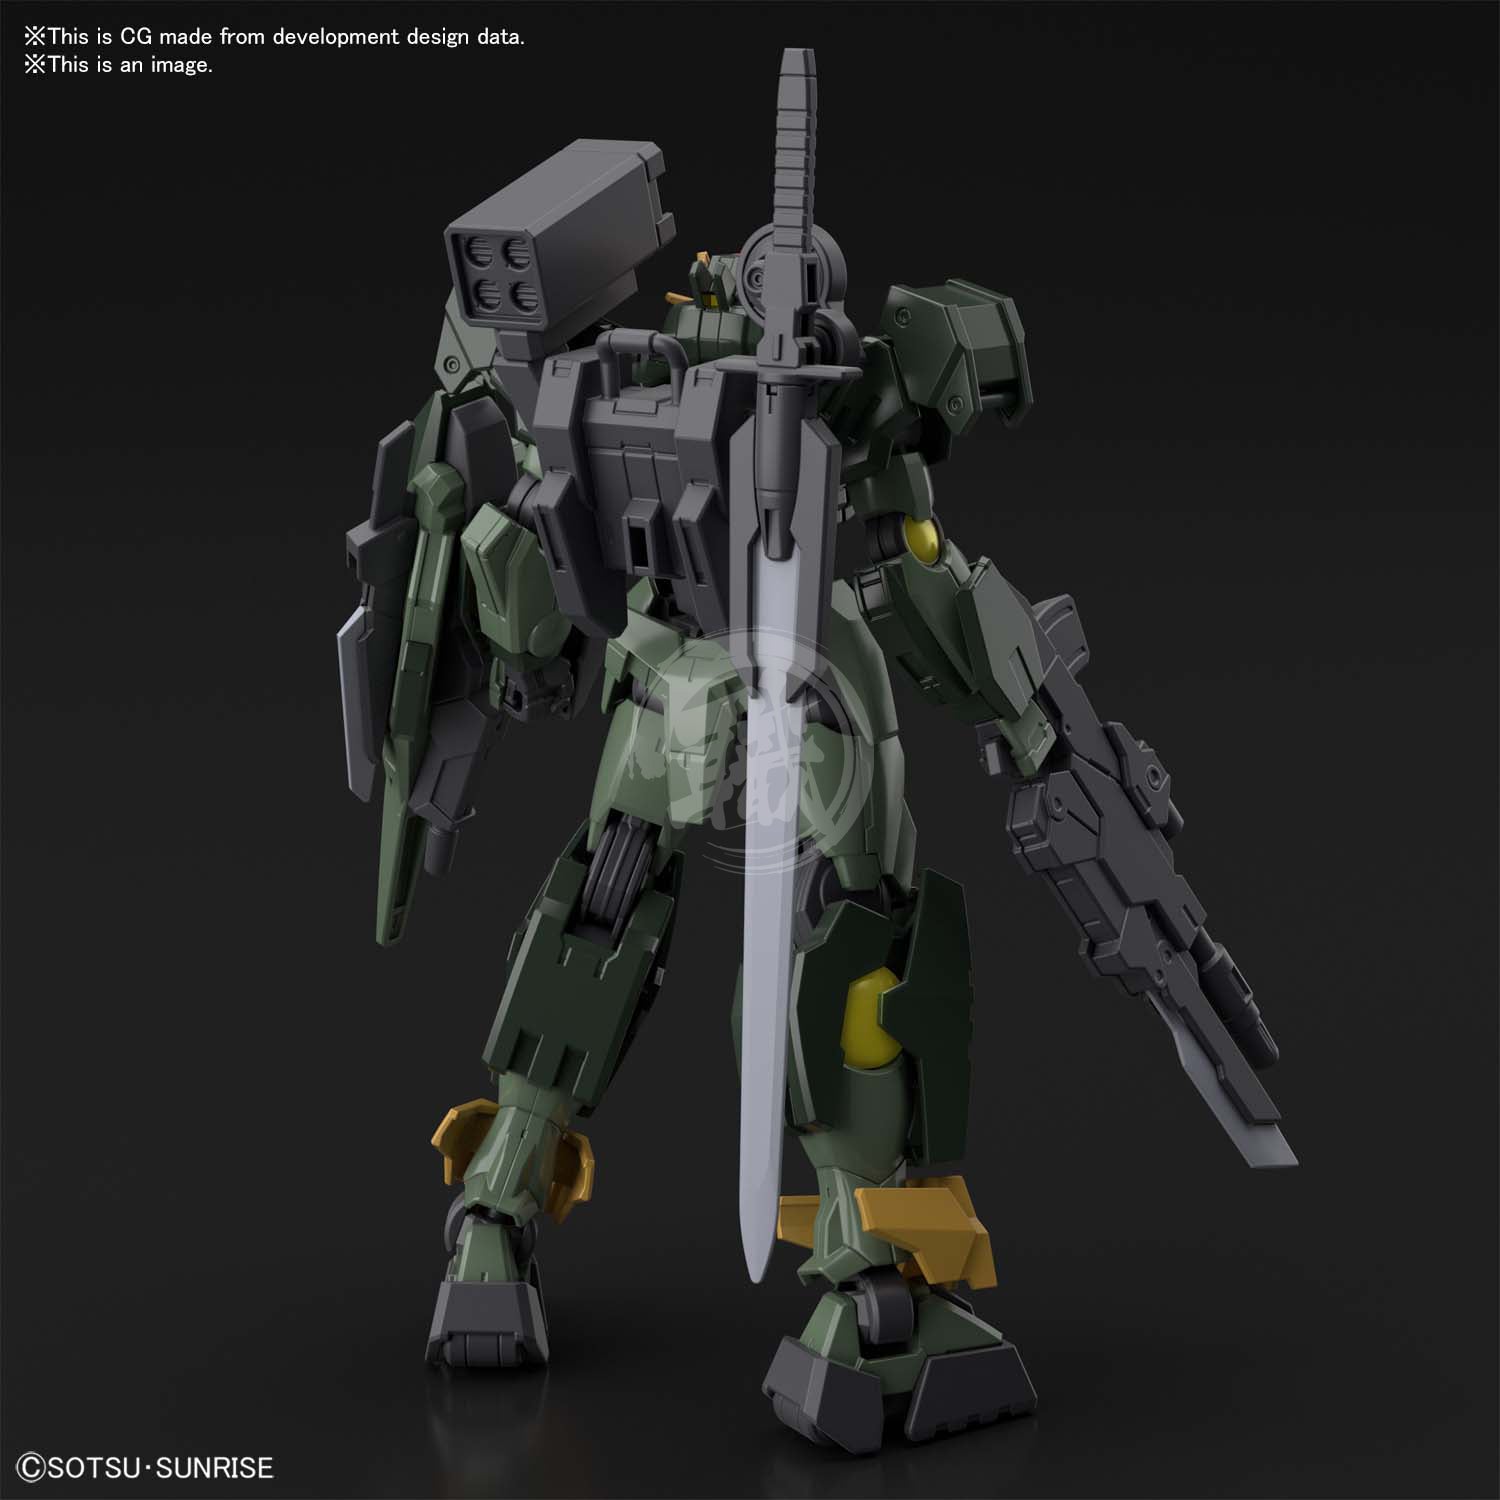 HG Gundam 00 Command QAN[T] - ShokuninGunpla